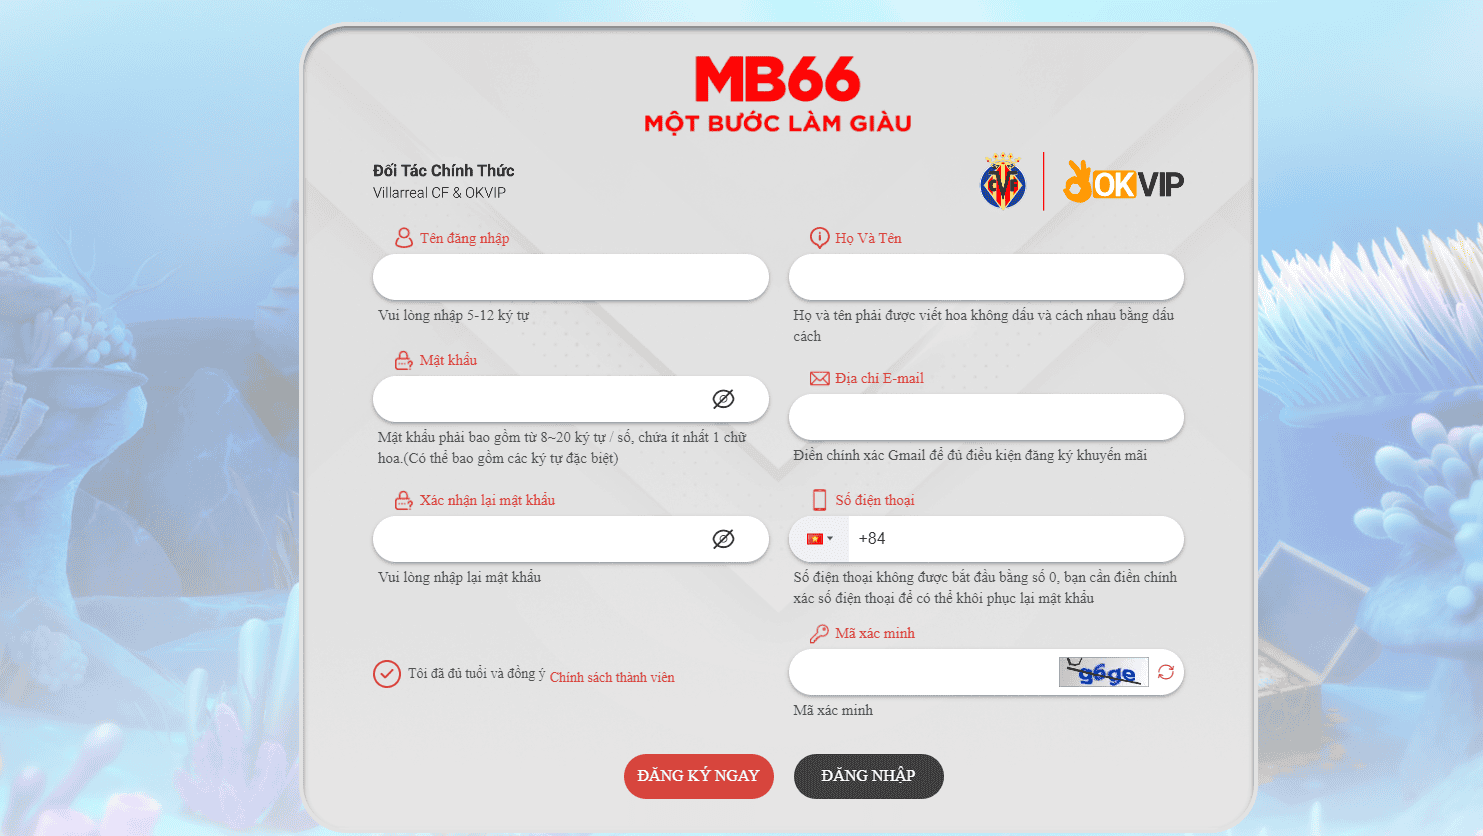 Đăng ký Mb66 với vài thao tác đơn giản